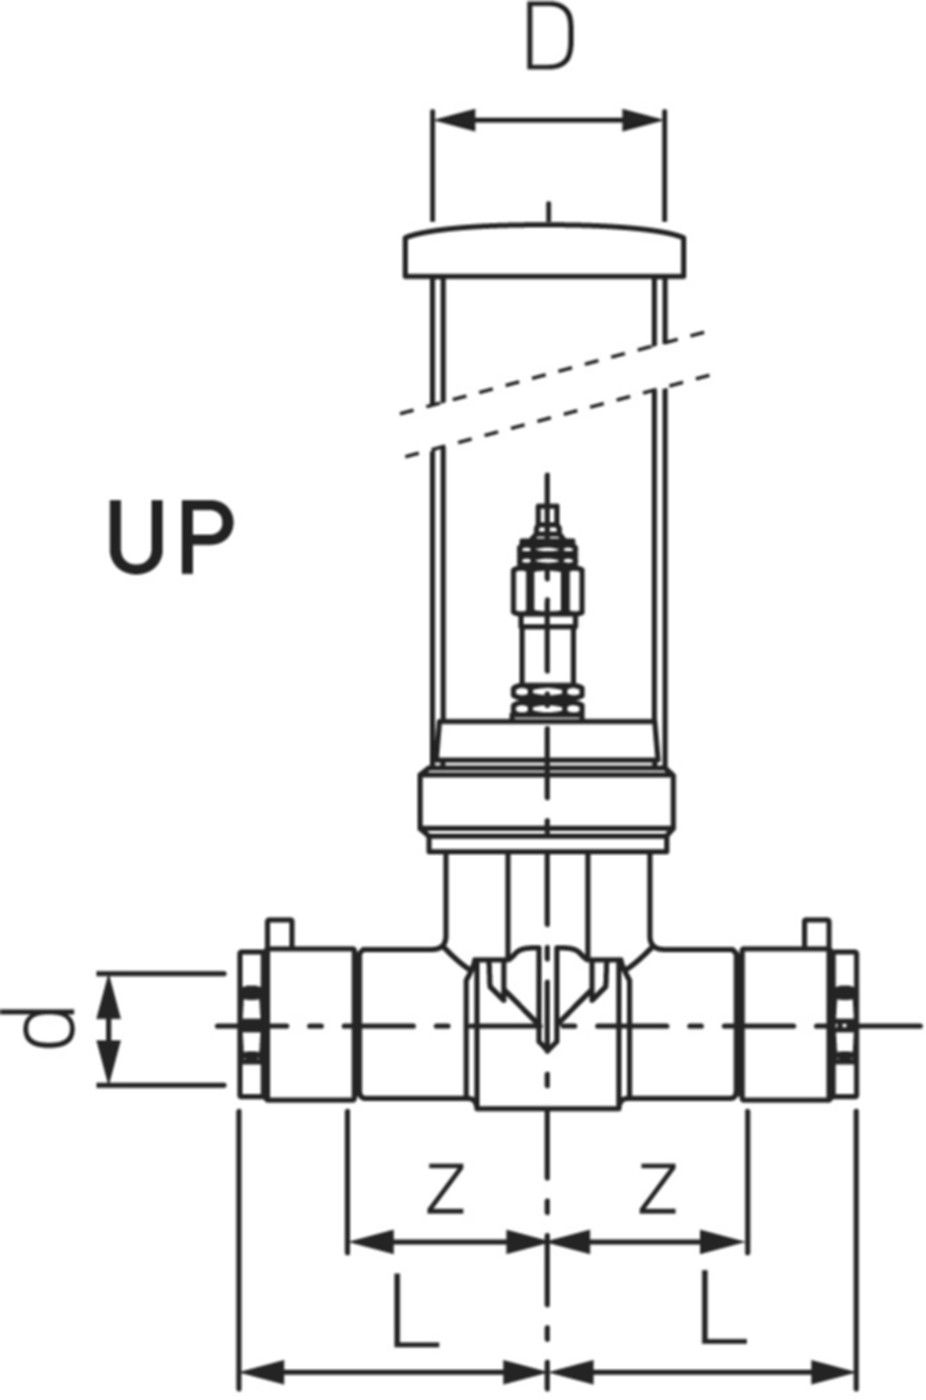 UP-Ventil für Fertigmontage-Set 6212 25mm (DN 20) 761 069 660 - GF Instaflex-HWS-Schweisssystem